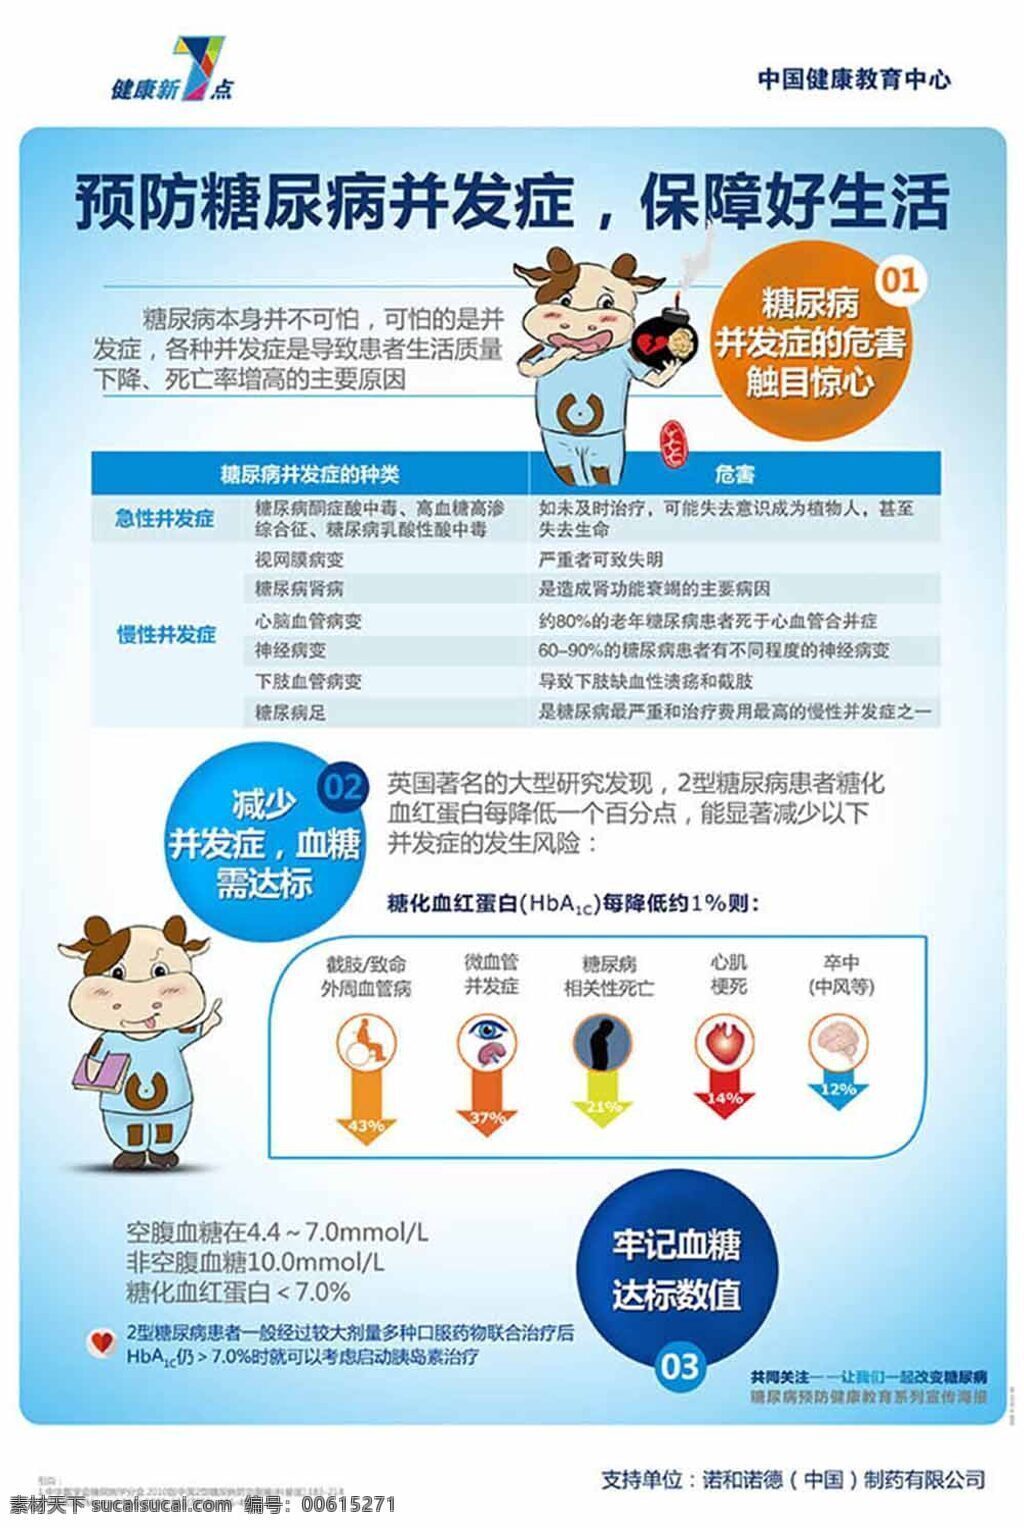 预防 糖尿病 并发症 宣传 展板 药品展板设计 企业展板设计 中国 健康 教育中心 展板模版 宣传广告 展板展架模板 白色